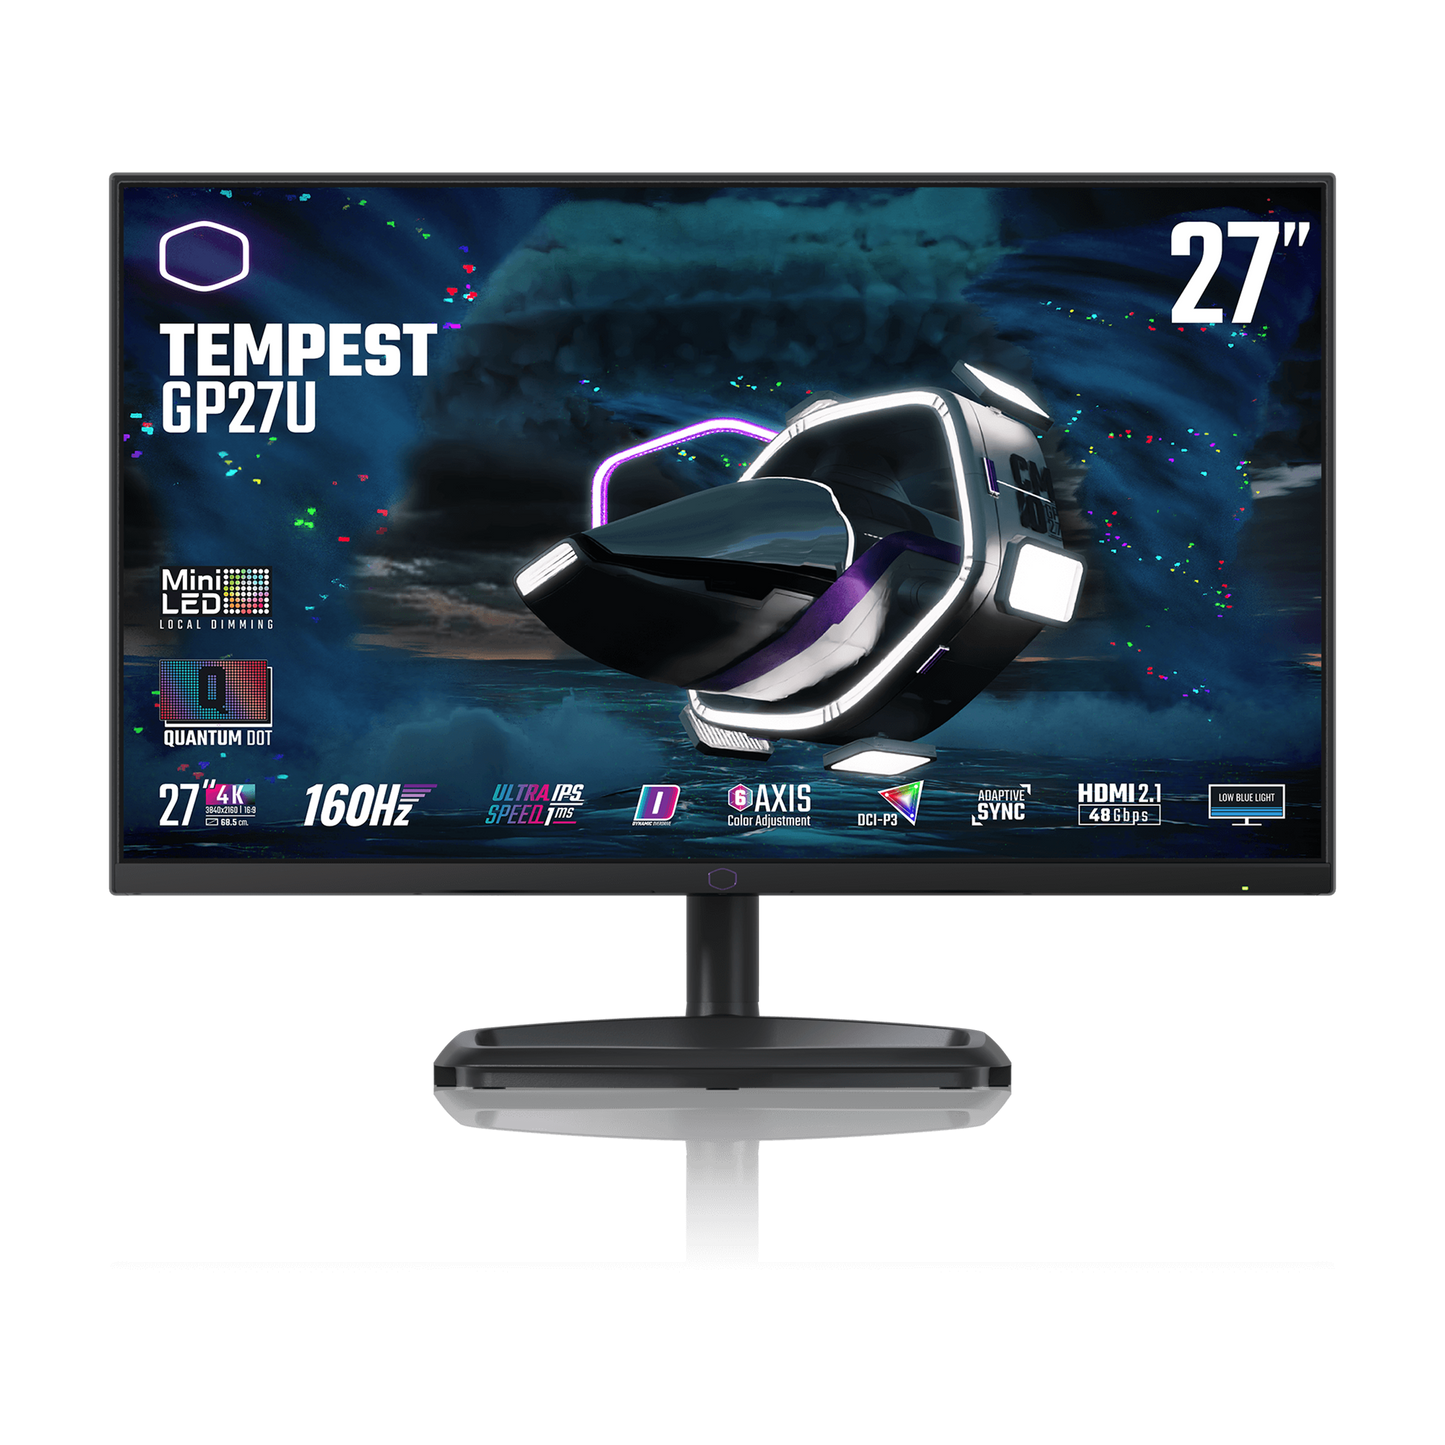 Cooler Master Tempest GP27U - Monitor da gioco MiniLED UHD 3840x2160 160Hz - 27 pollici